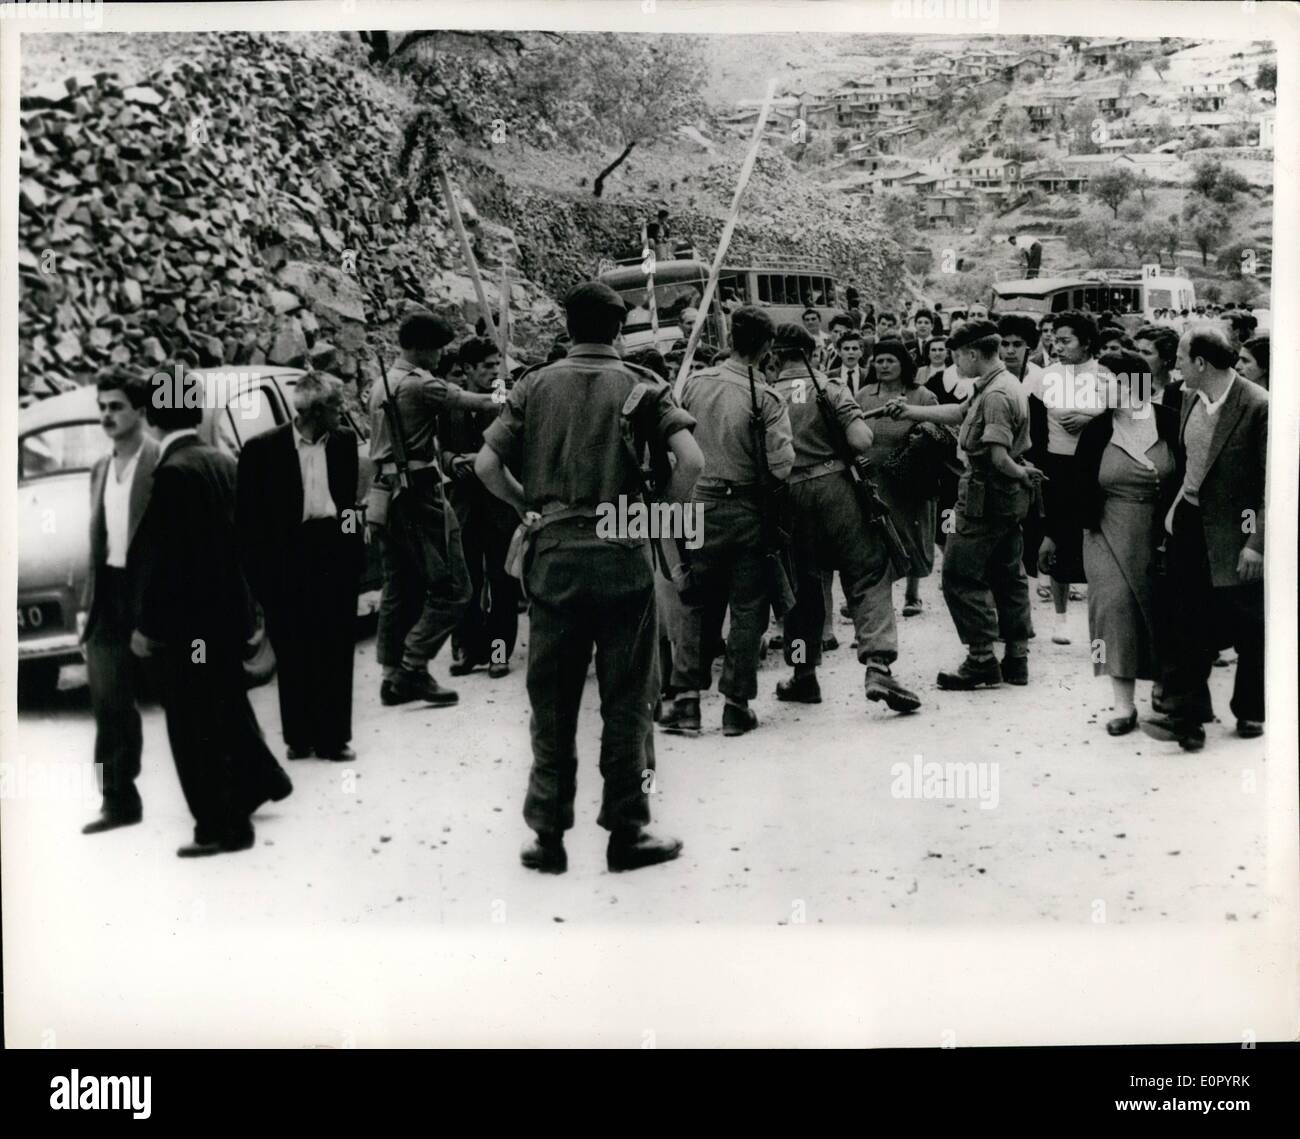 05 mai 1957 - Au service d'exécution de Chypriotes turcs. Des milliers d'y assister. Des milliers de personnes de toutes les régions de Chypre est allé au cimetière dans le village de Kalohori, d'assister à des services à la mémoire de tous les Chypriotes turcs exécutés. La foule a effectué des drapeaux et des photos de l'exécution. Après le service, les troupes britanniques sont intervenues et ont dispersé la foule. Photo Keystone montre :- les troupes britanniques vu comme ils se sont dispersés parmi la foule, après le service. Banque D'Images